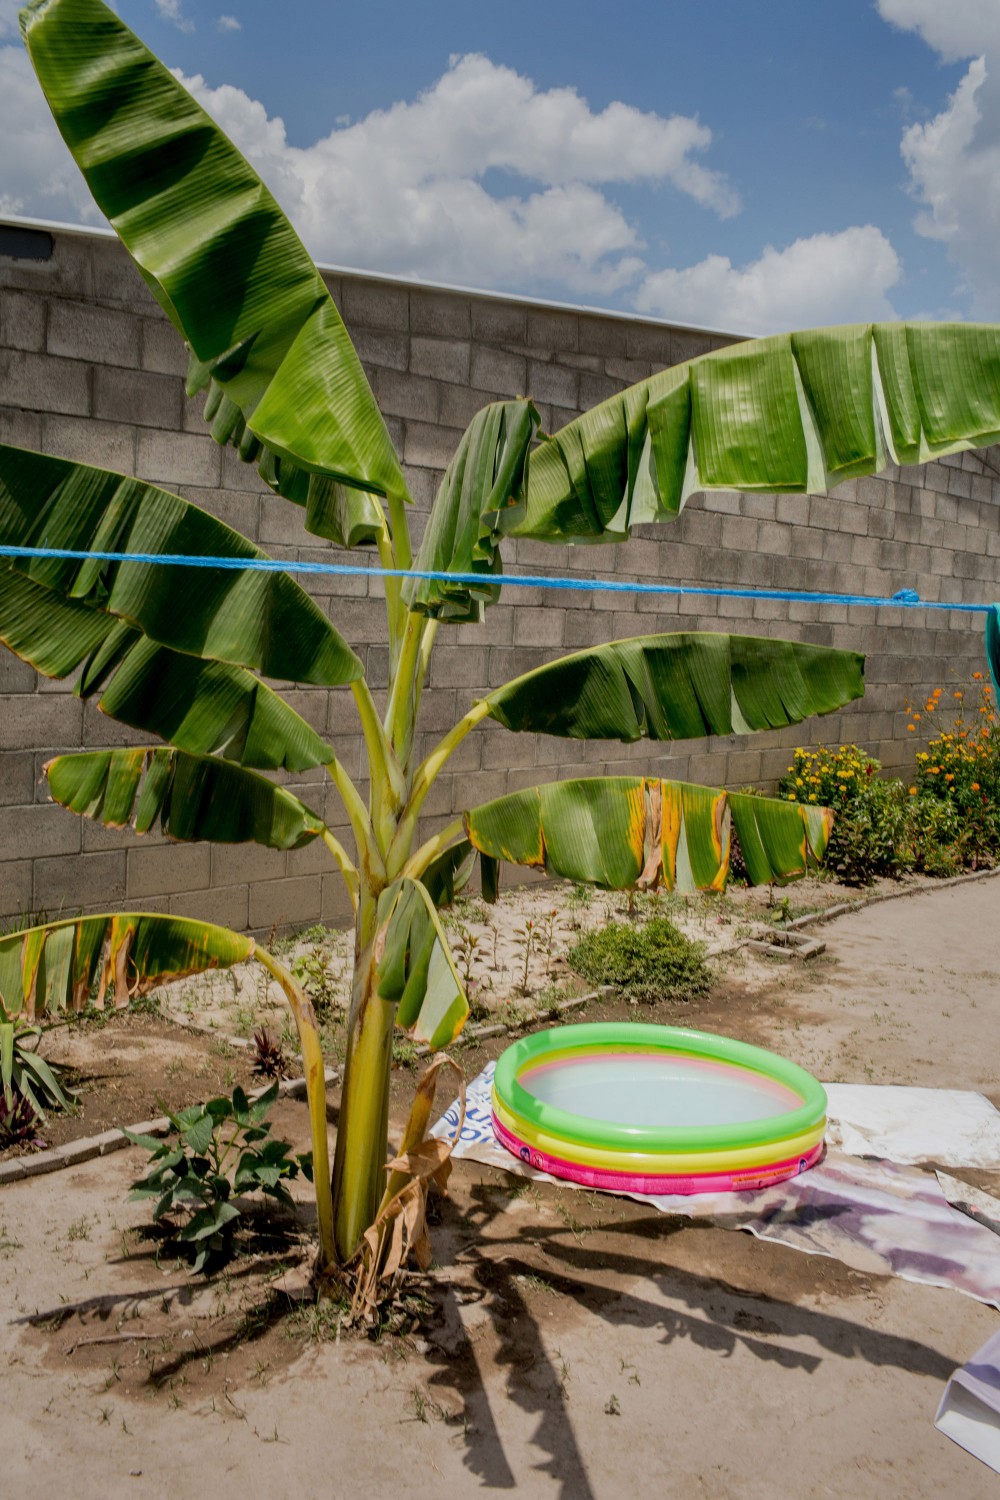 April 2017, El Salvador, San Salvador. A baby pool in the heat of the day in Tonacatapeque San Salvador. (Natalie Keyssar)